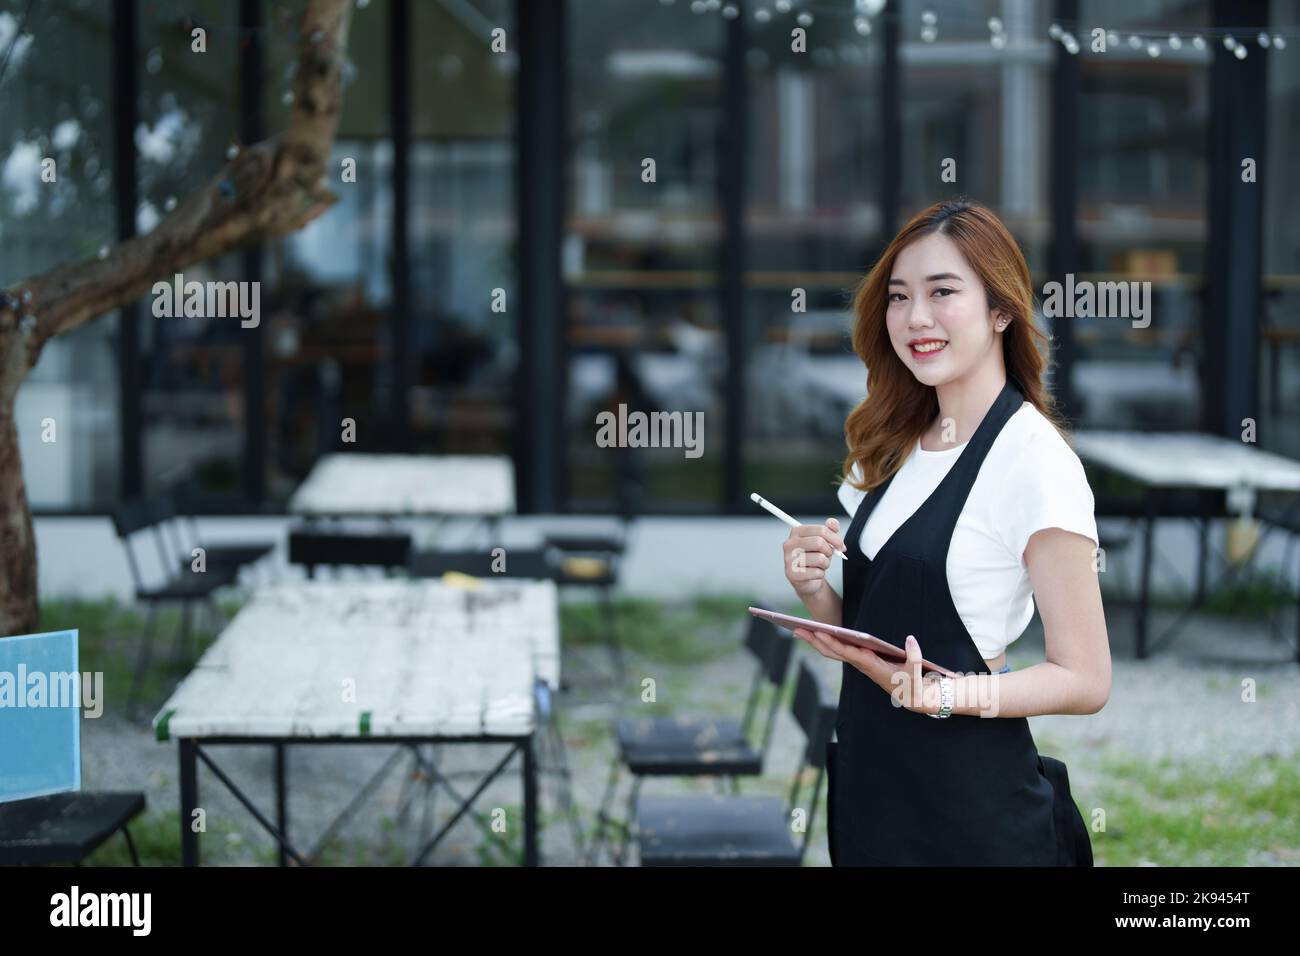 Début et ouverture d'une petite entreprise, une jeune femme asiatique montrant un visage souriant tenant une tablette dans un tablier devant un café-bar Banque D'Images